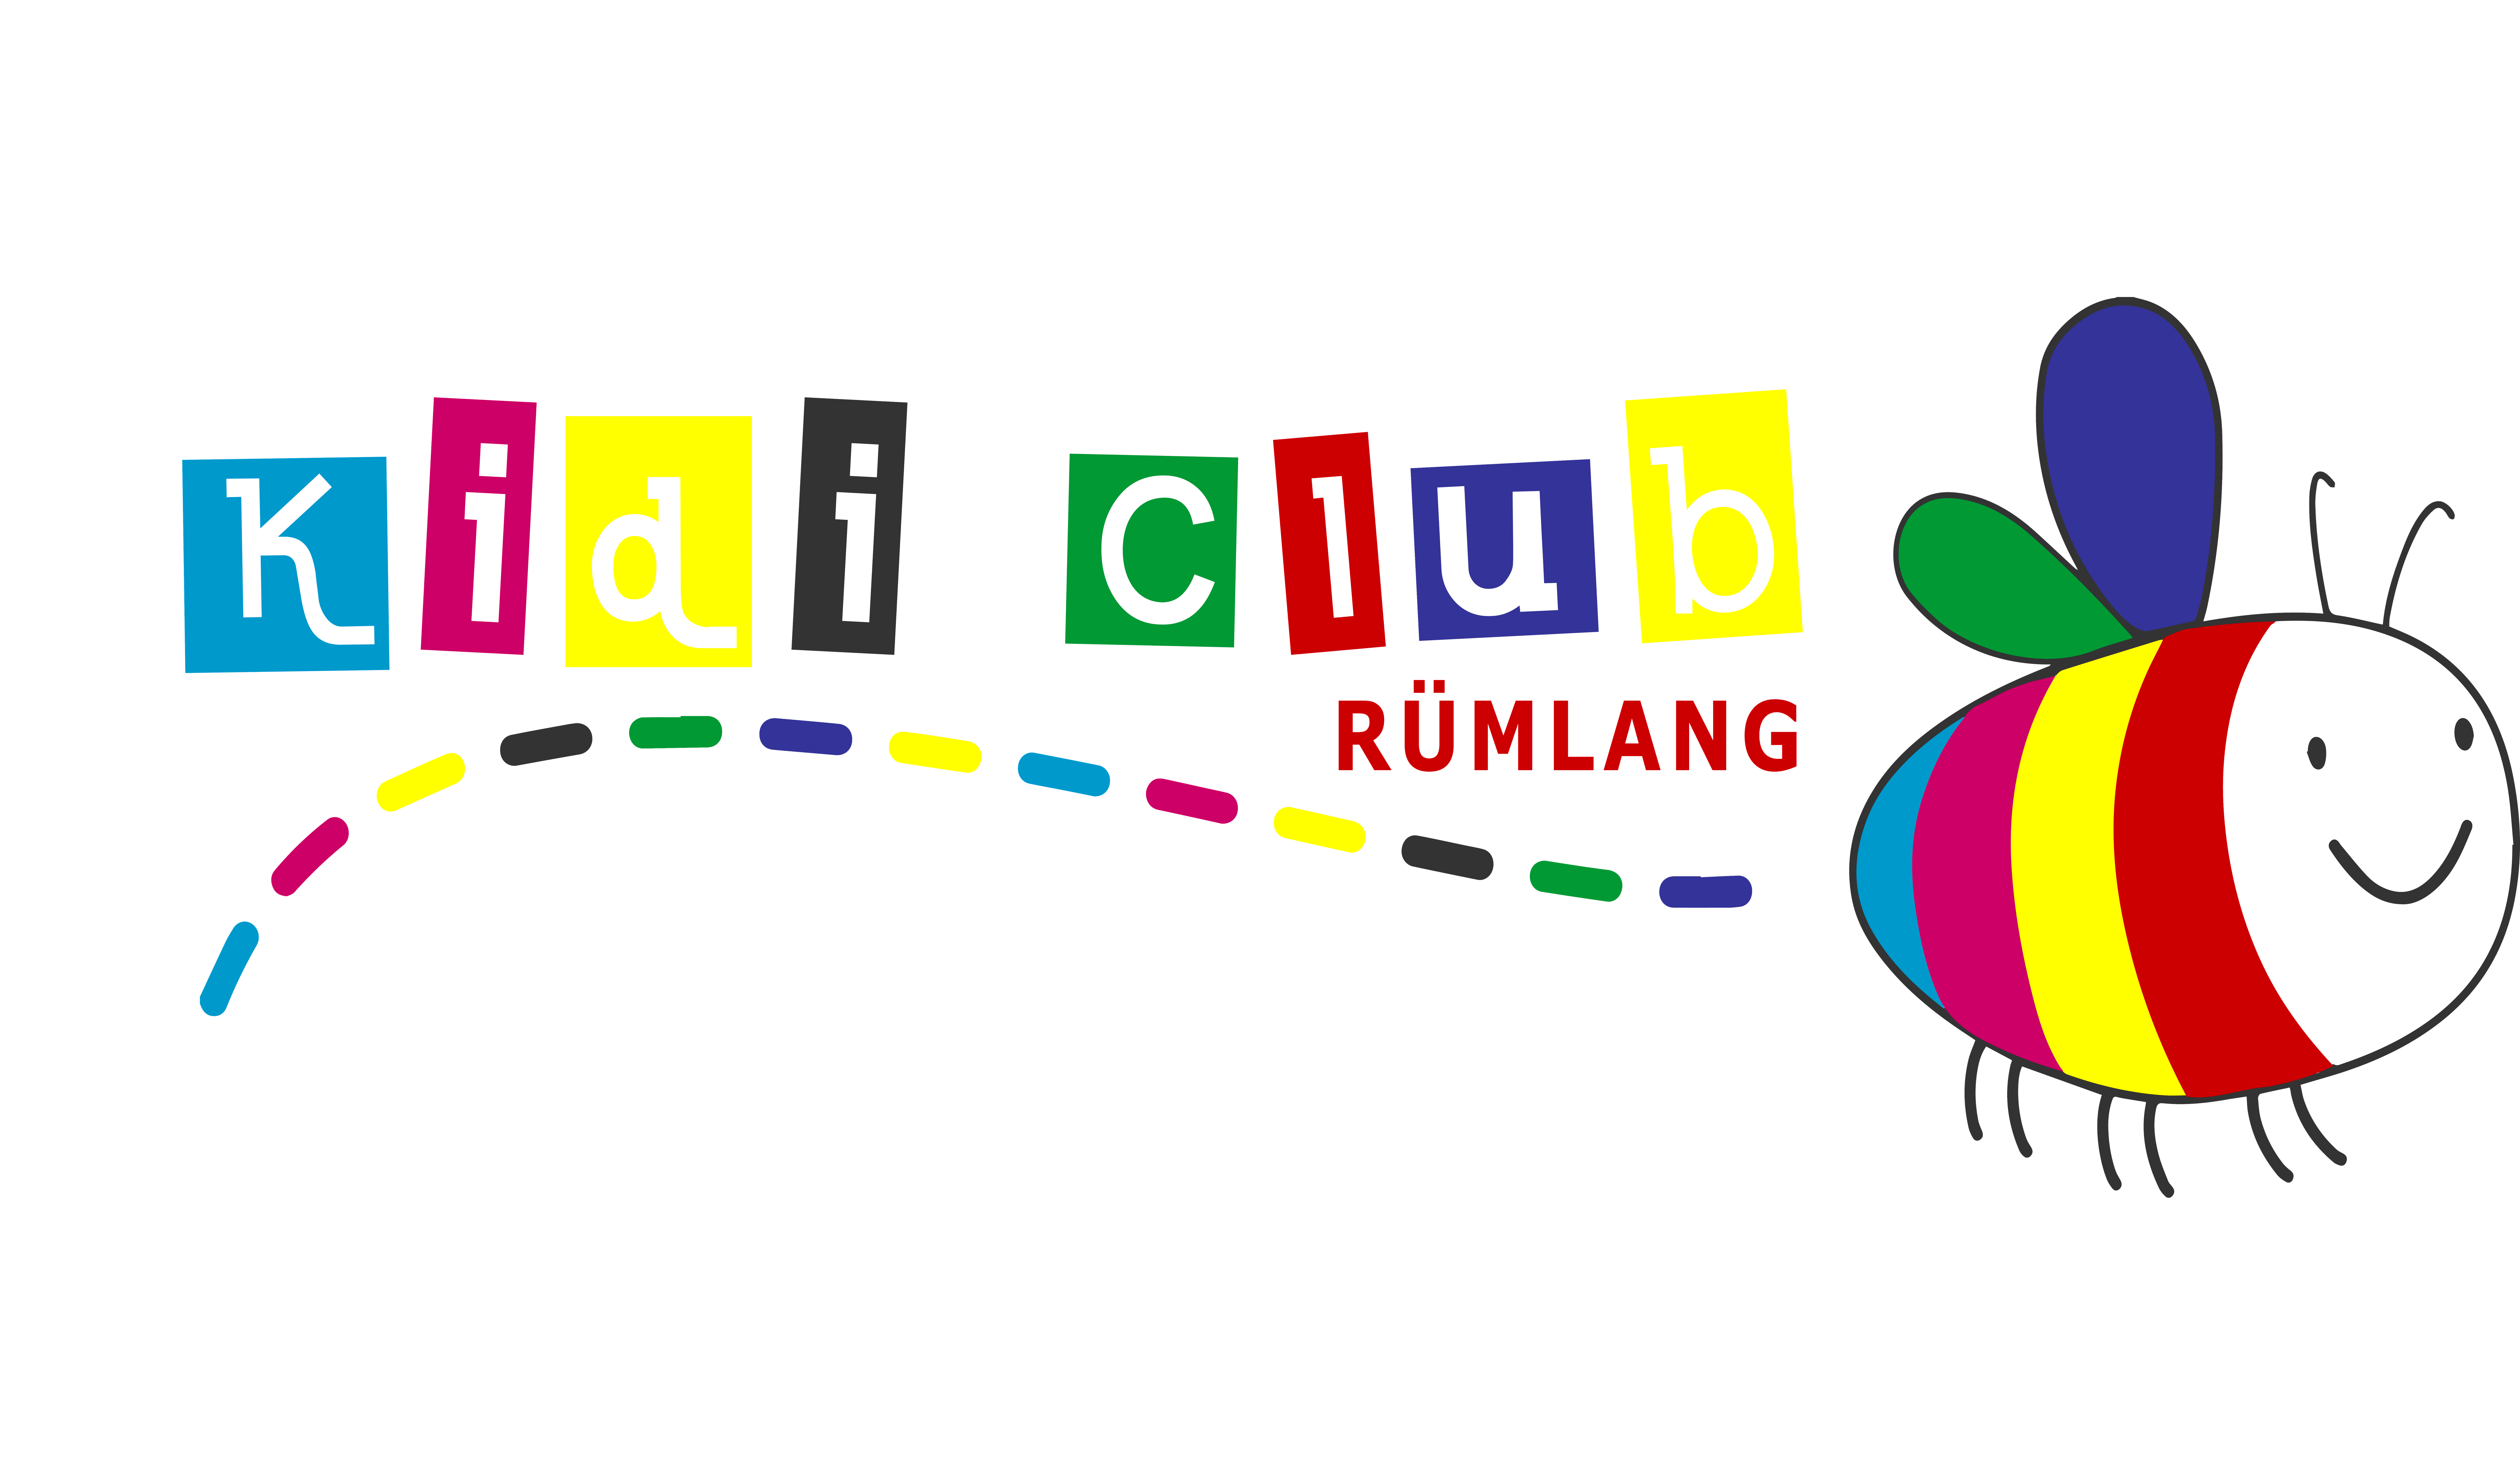 Willkommen bei Kidi Club